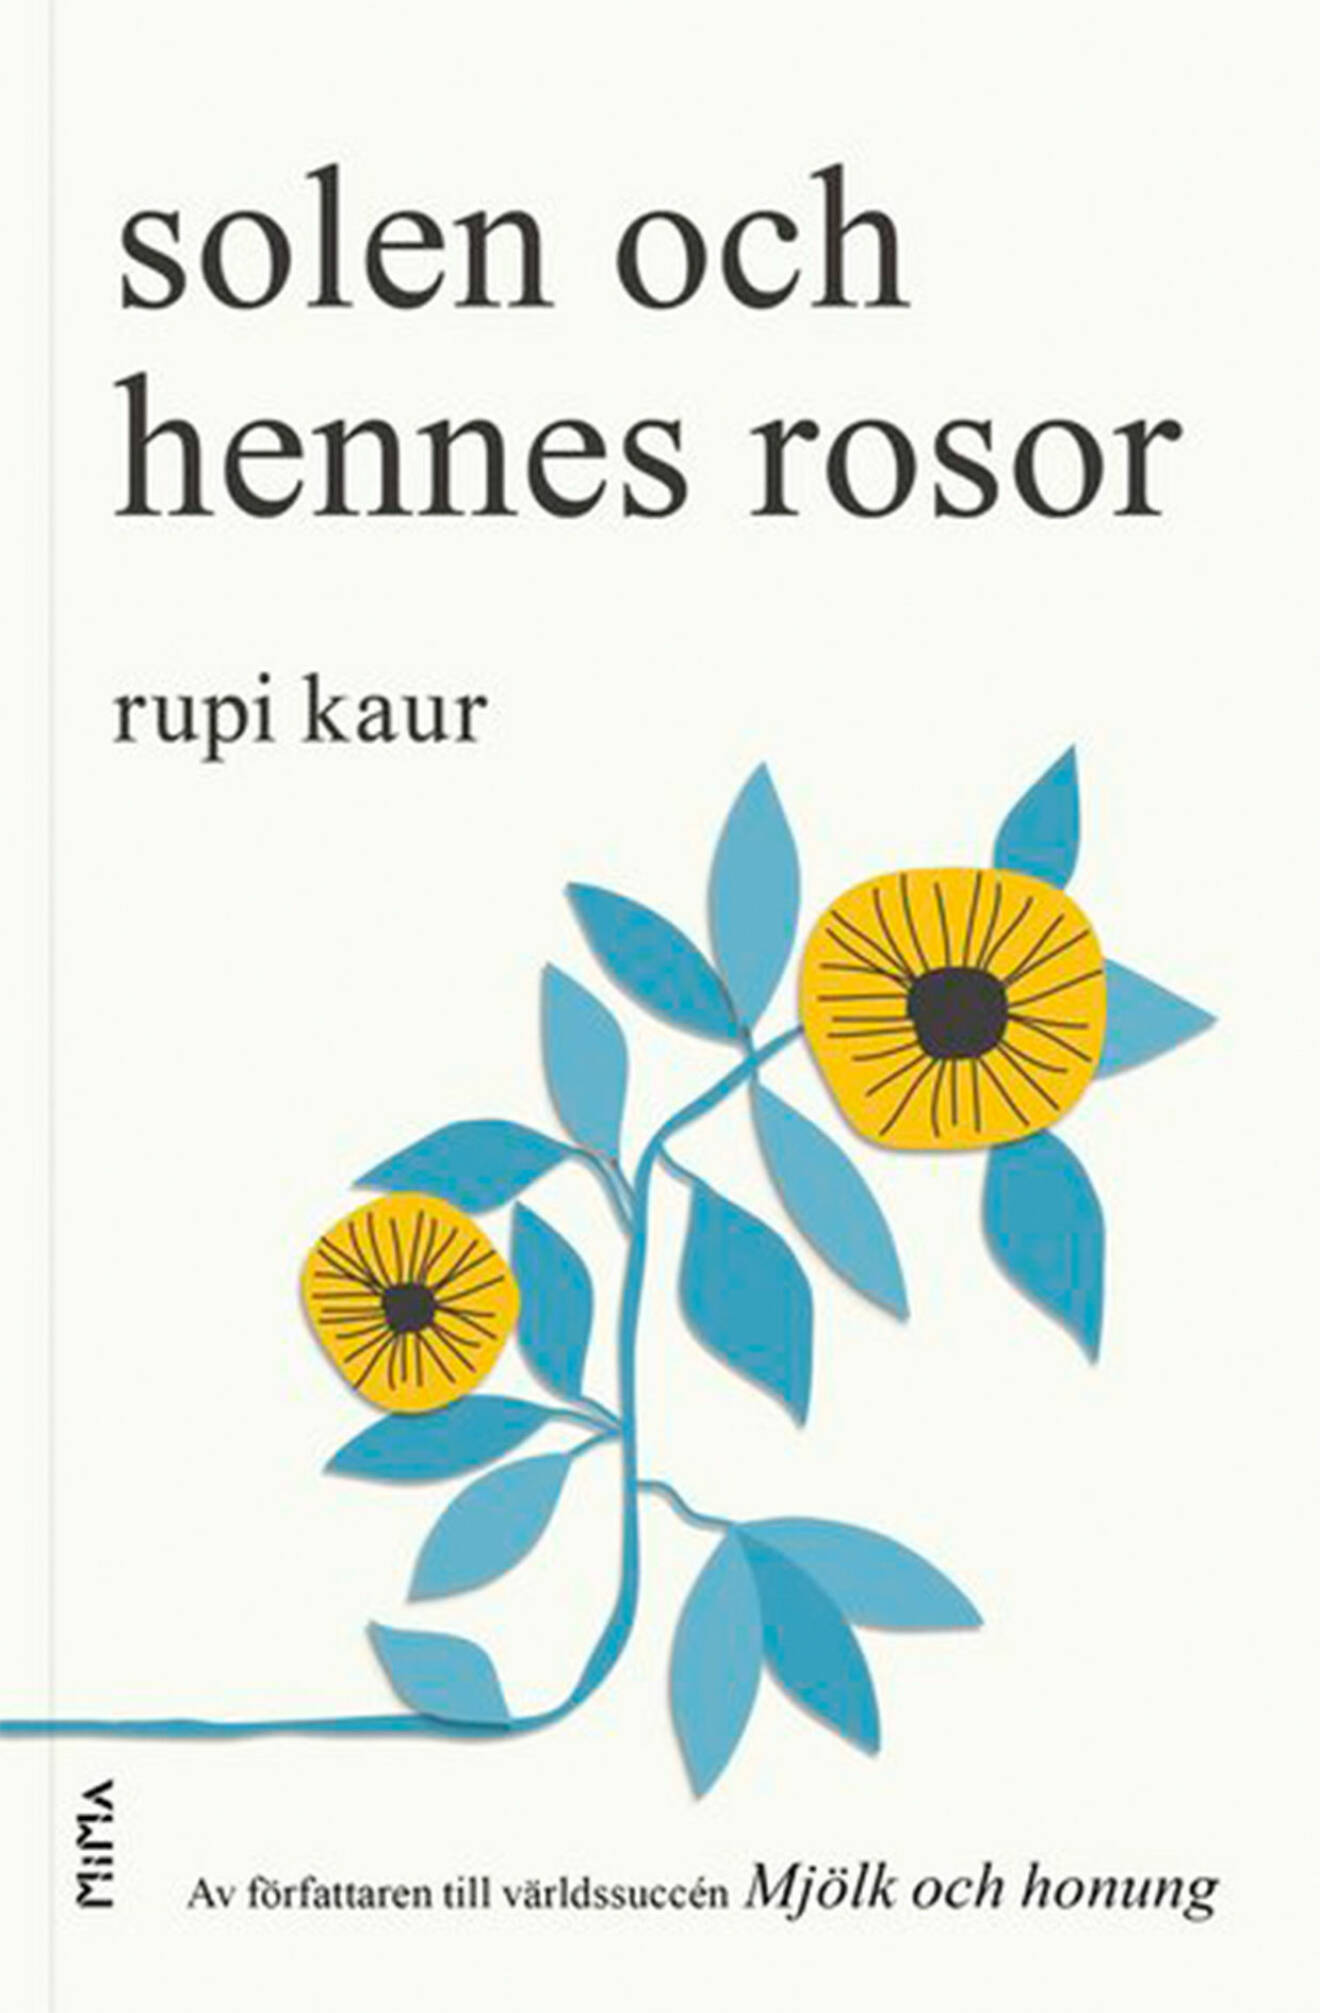 Bokomslag till Solen och hennes rosor, en blå och gul tecknad blomma. 